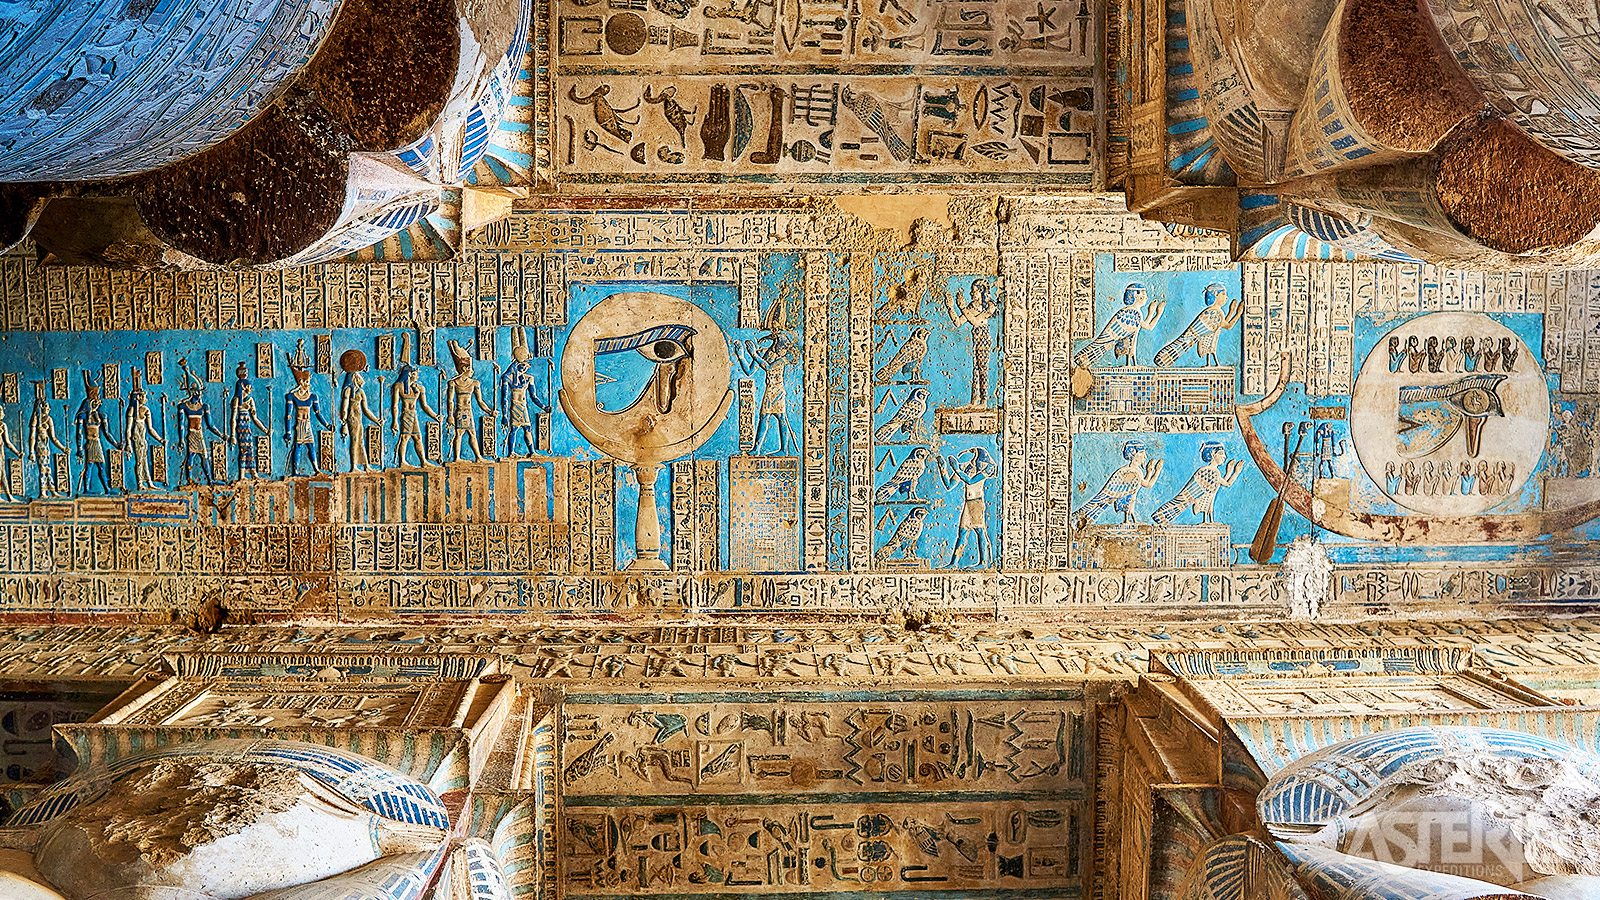 Het Tempelcomplex van Dendera wordt beschouwd als een van de best bewaard gebleven tempels in Egypte